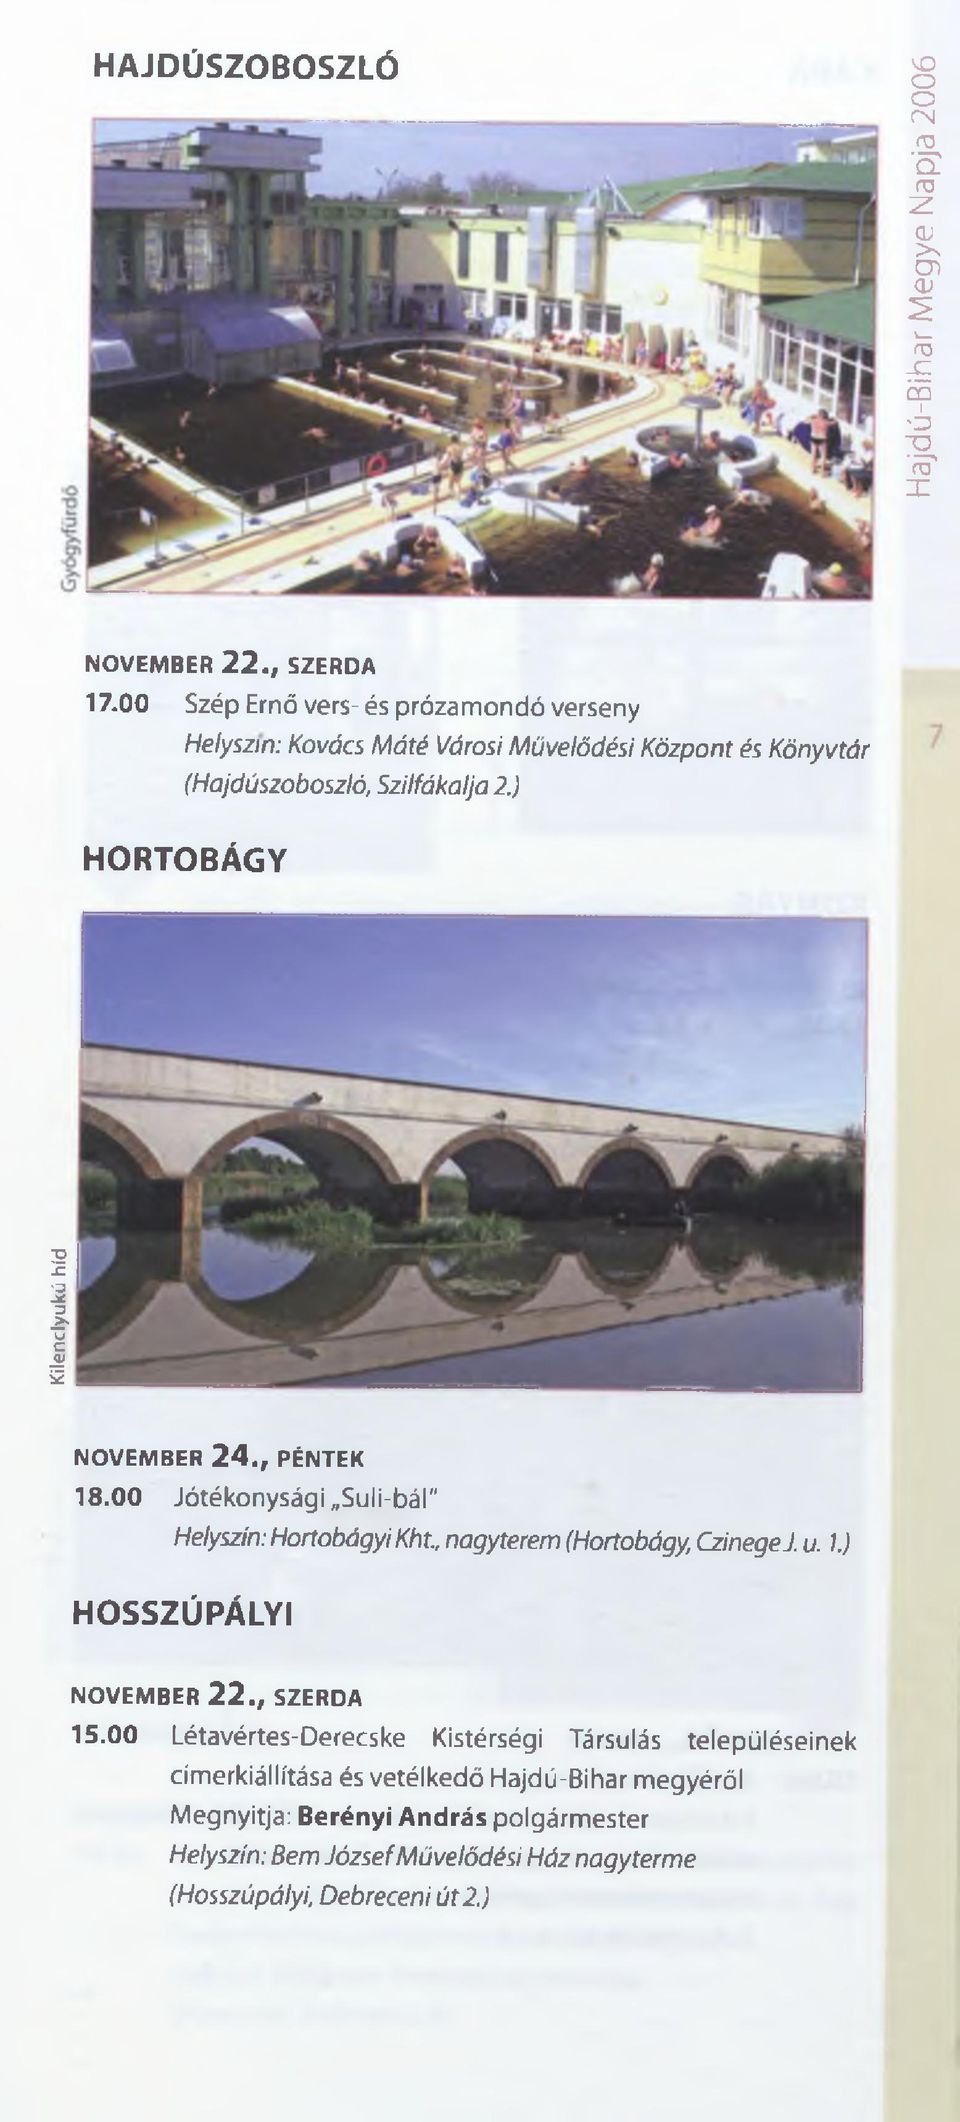 ) HORTOBÁGY Kilenclyukú híd NOVEMBER 2 4., PÉNTEK 18.00 Jótékonysági Suli-bál" Helyszín: Hortobágyi Kht., nagyterem (Hortobágy, CzinegeJ. u. 1.) HOSSZÚPÁLYI NOVEM BER 2 2.